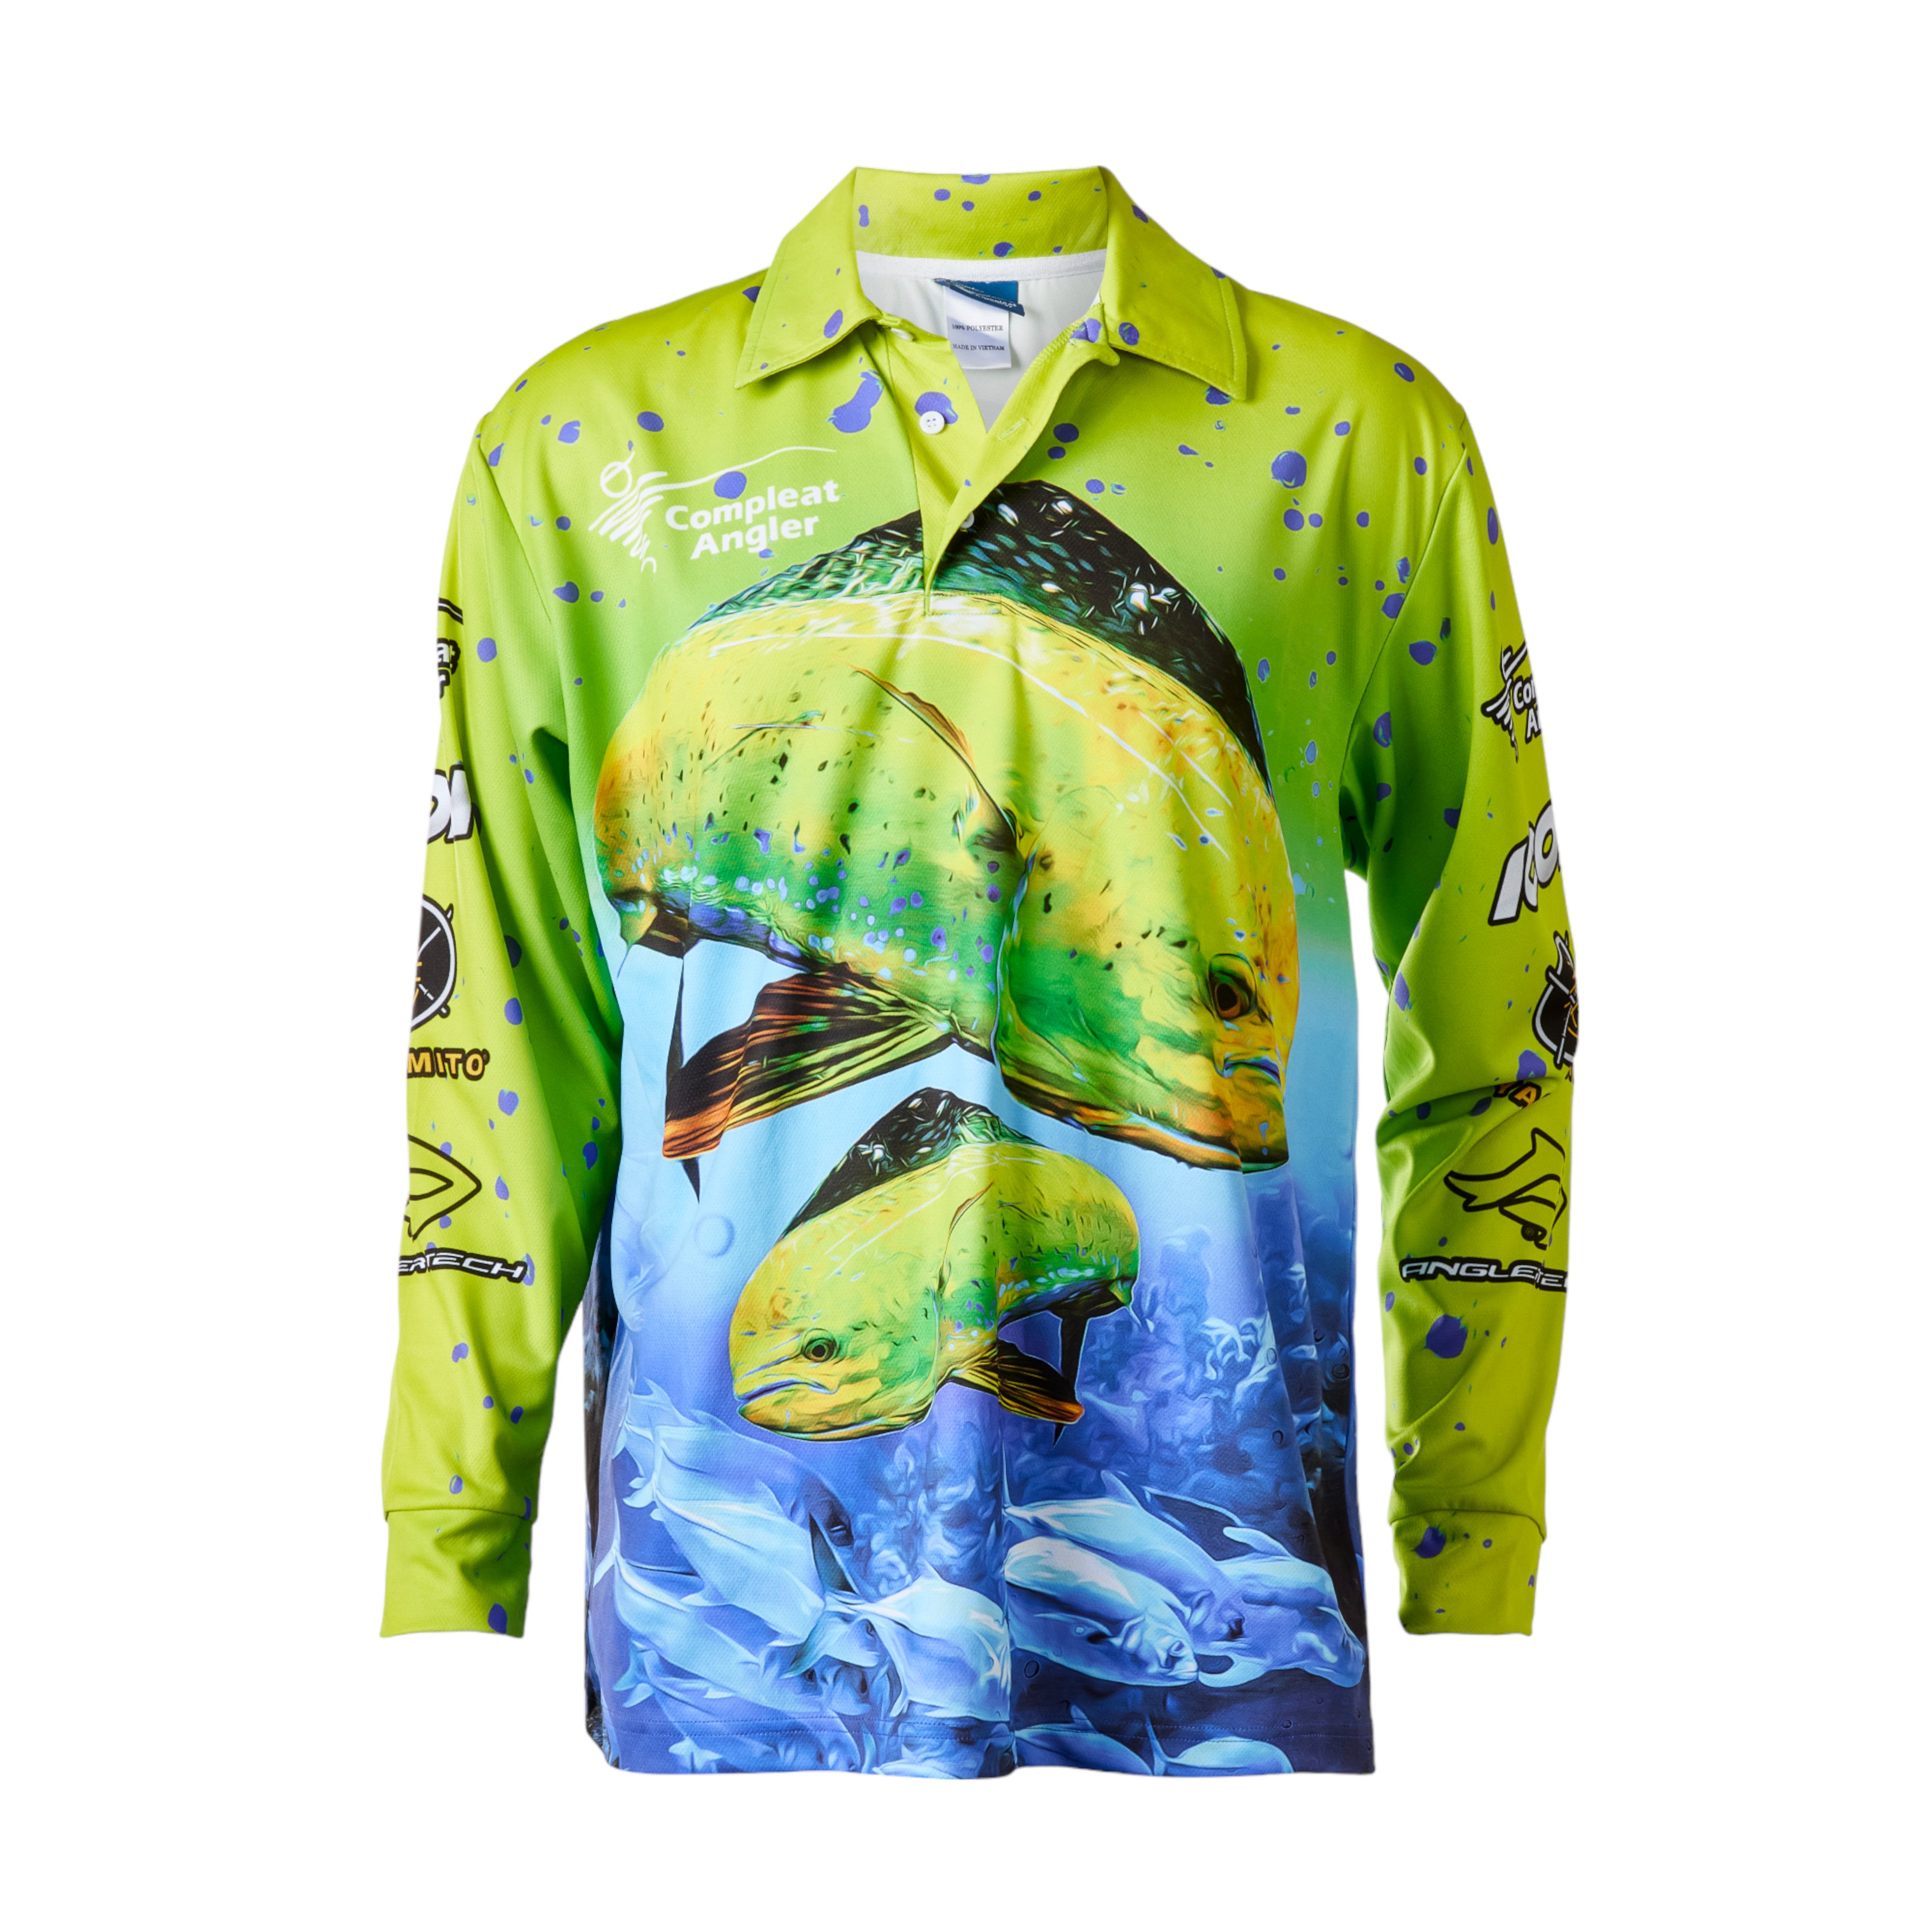 Compleat Angler Mahi Tournament Kids Shirt